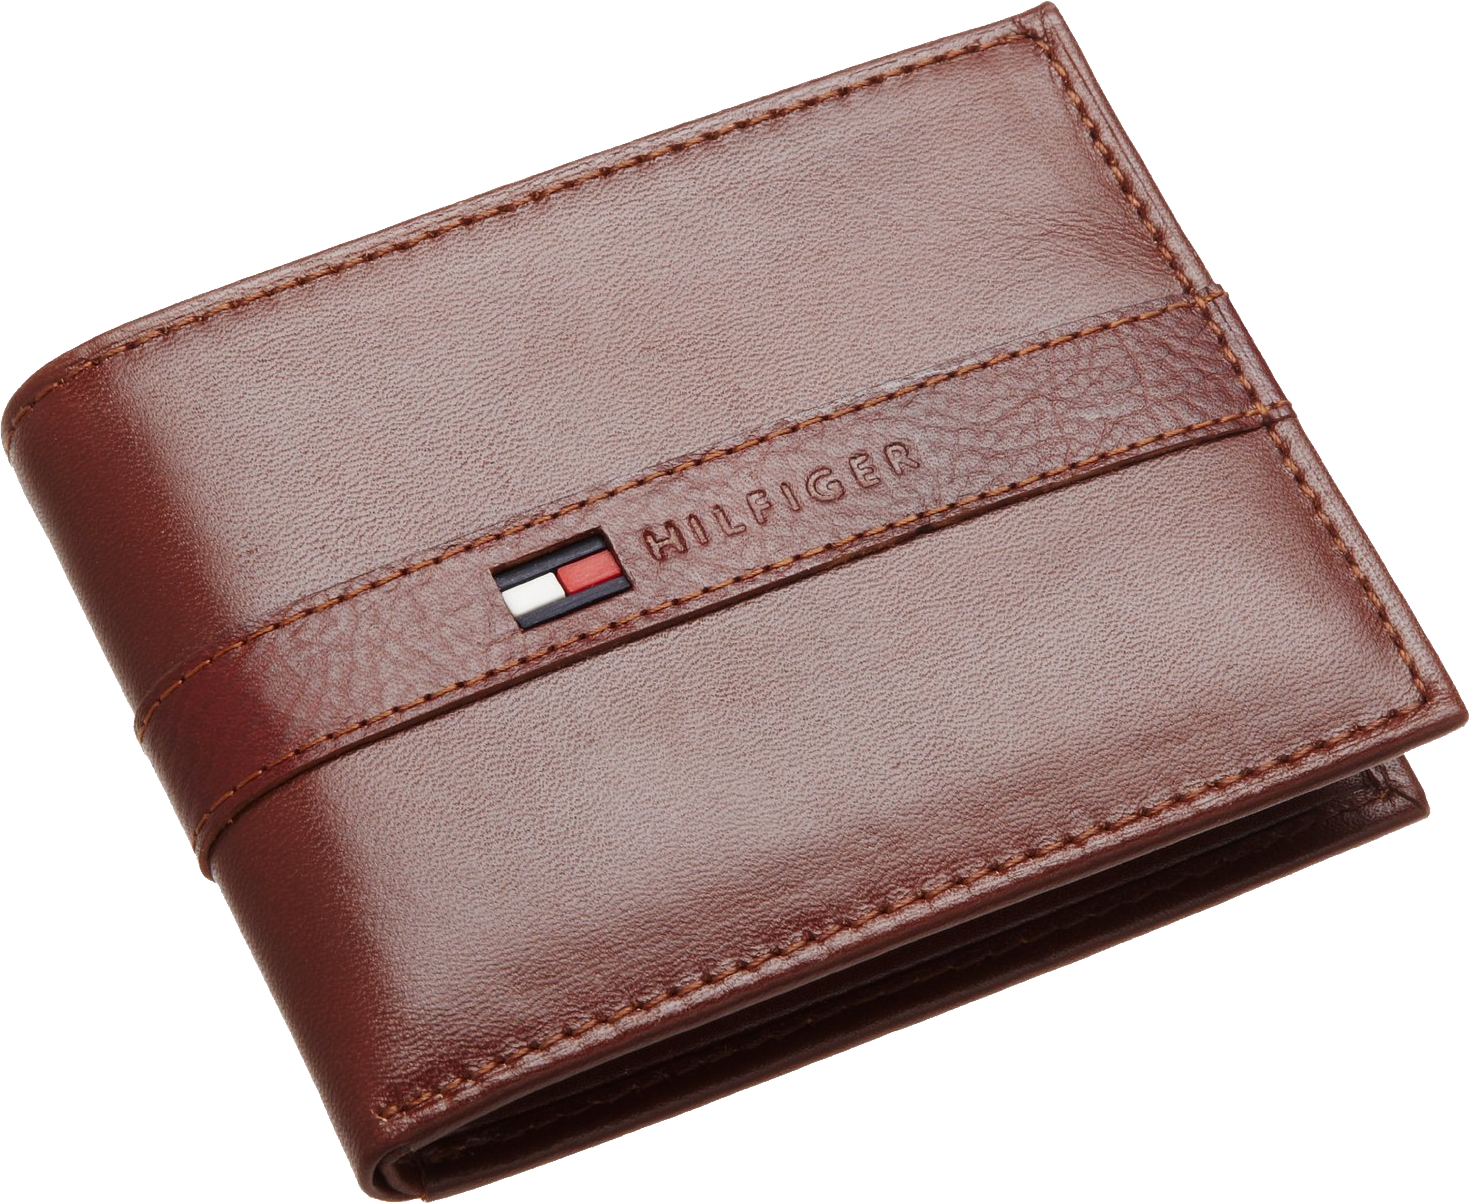 Wallet PNG Transparent Image